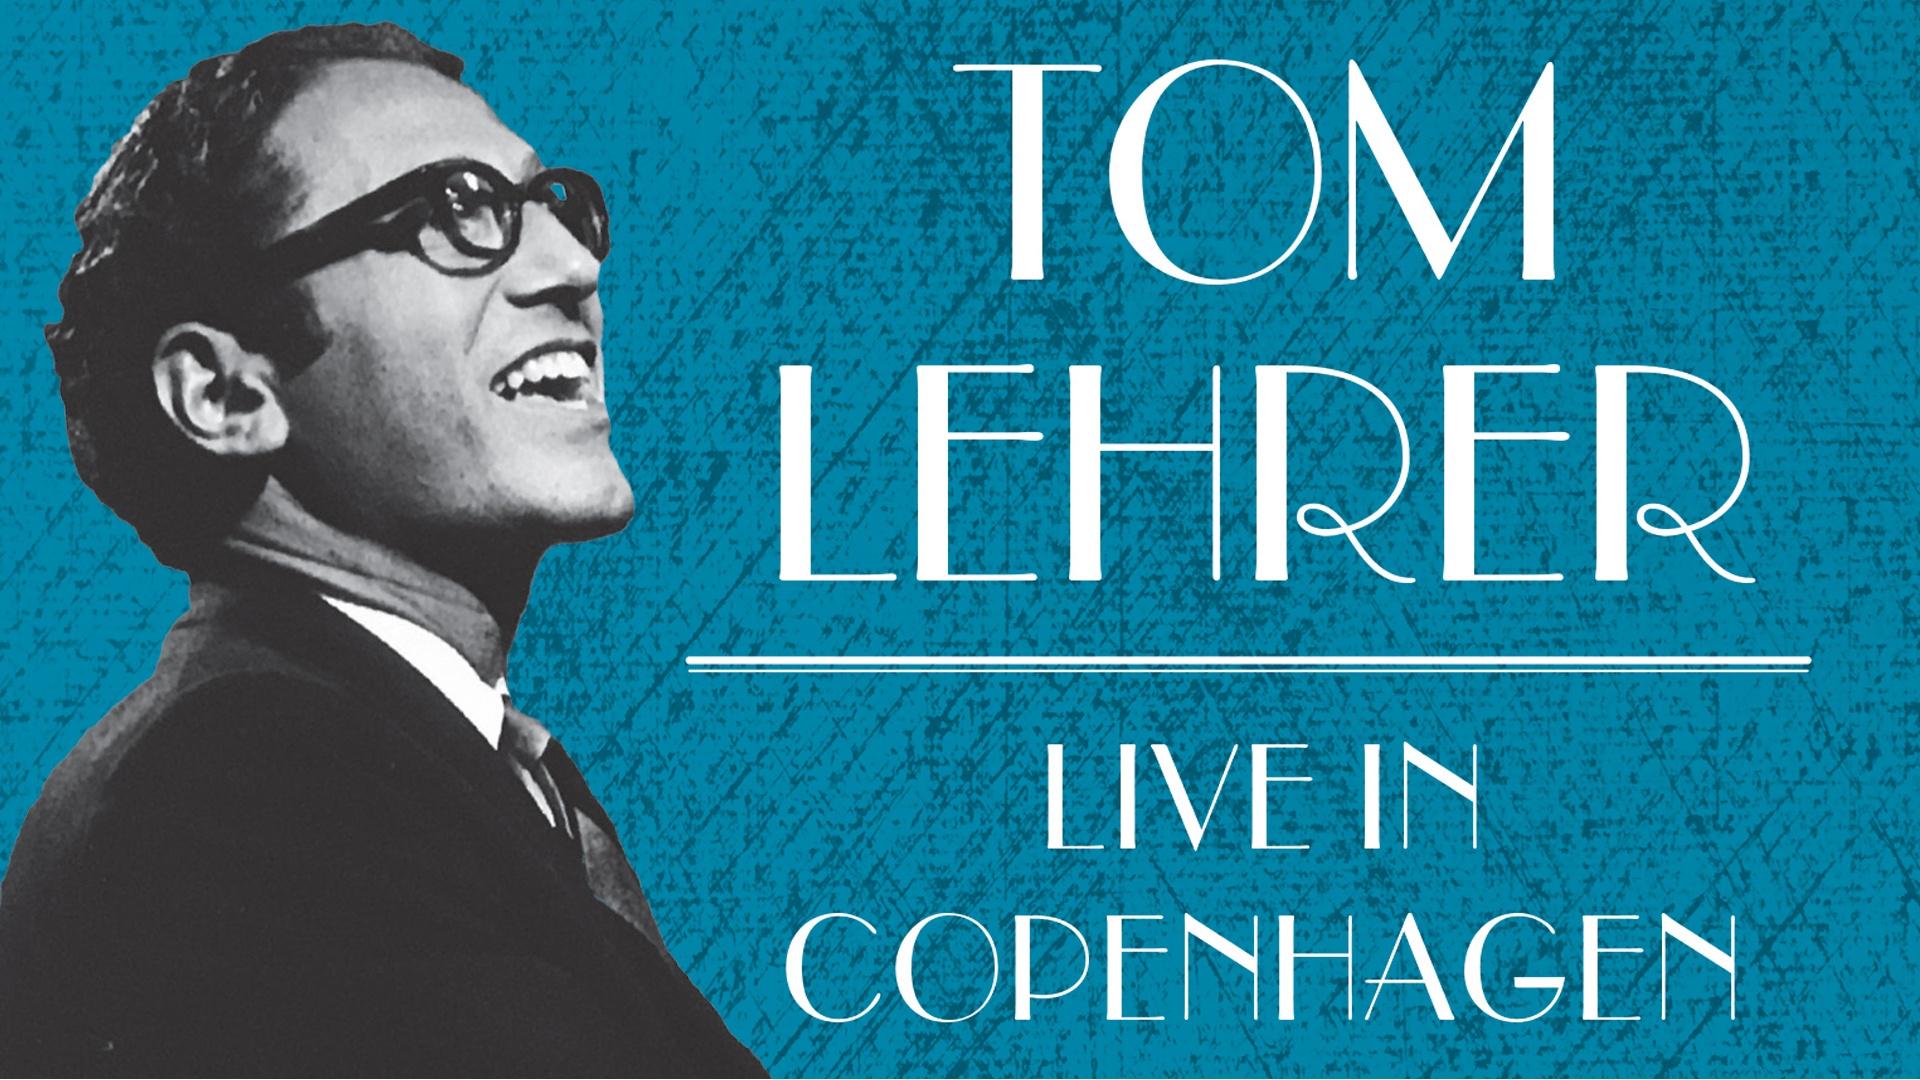 Tom Lehrer Live In Copenhagen 1967 | KQED